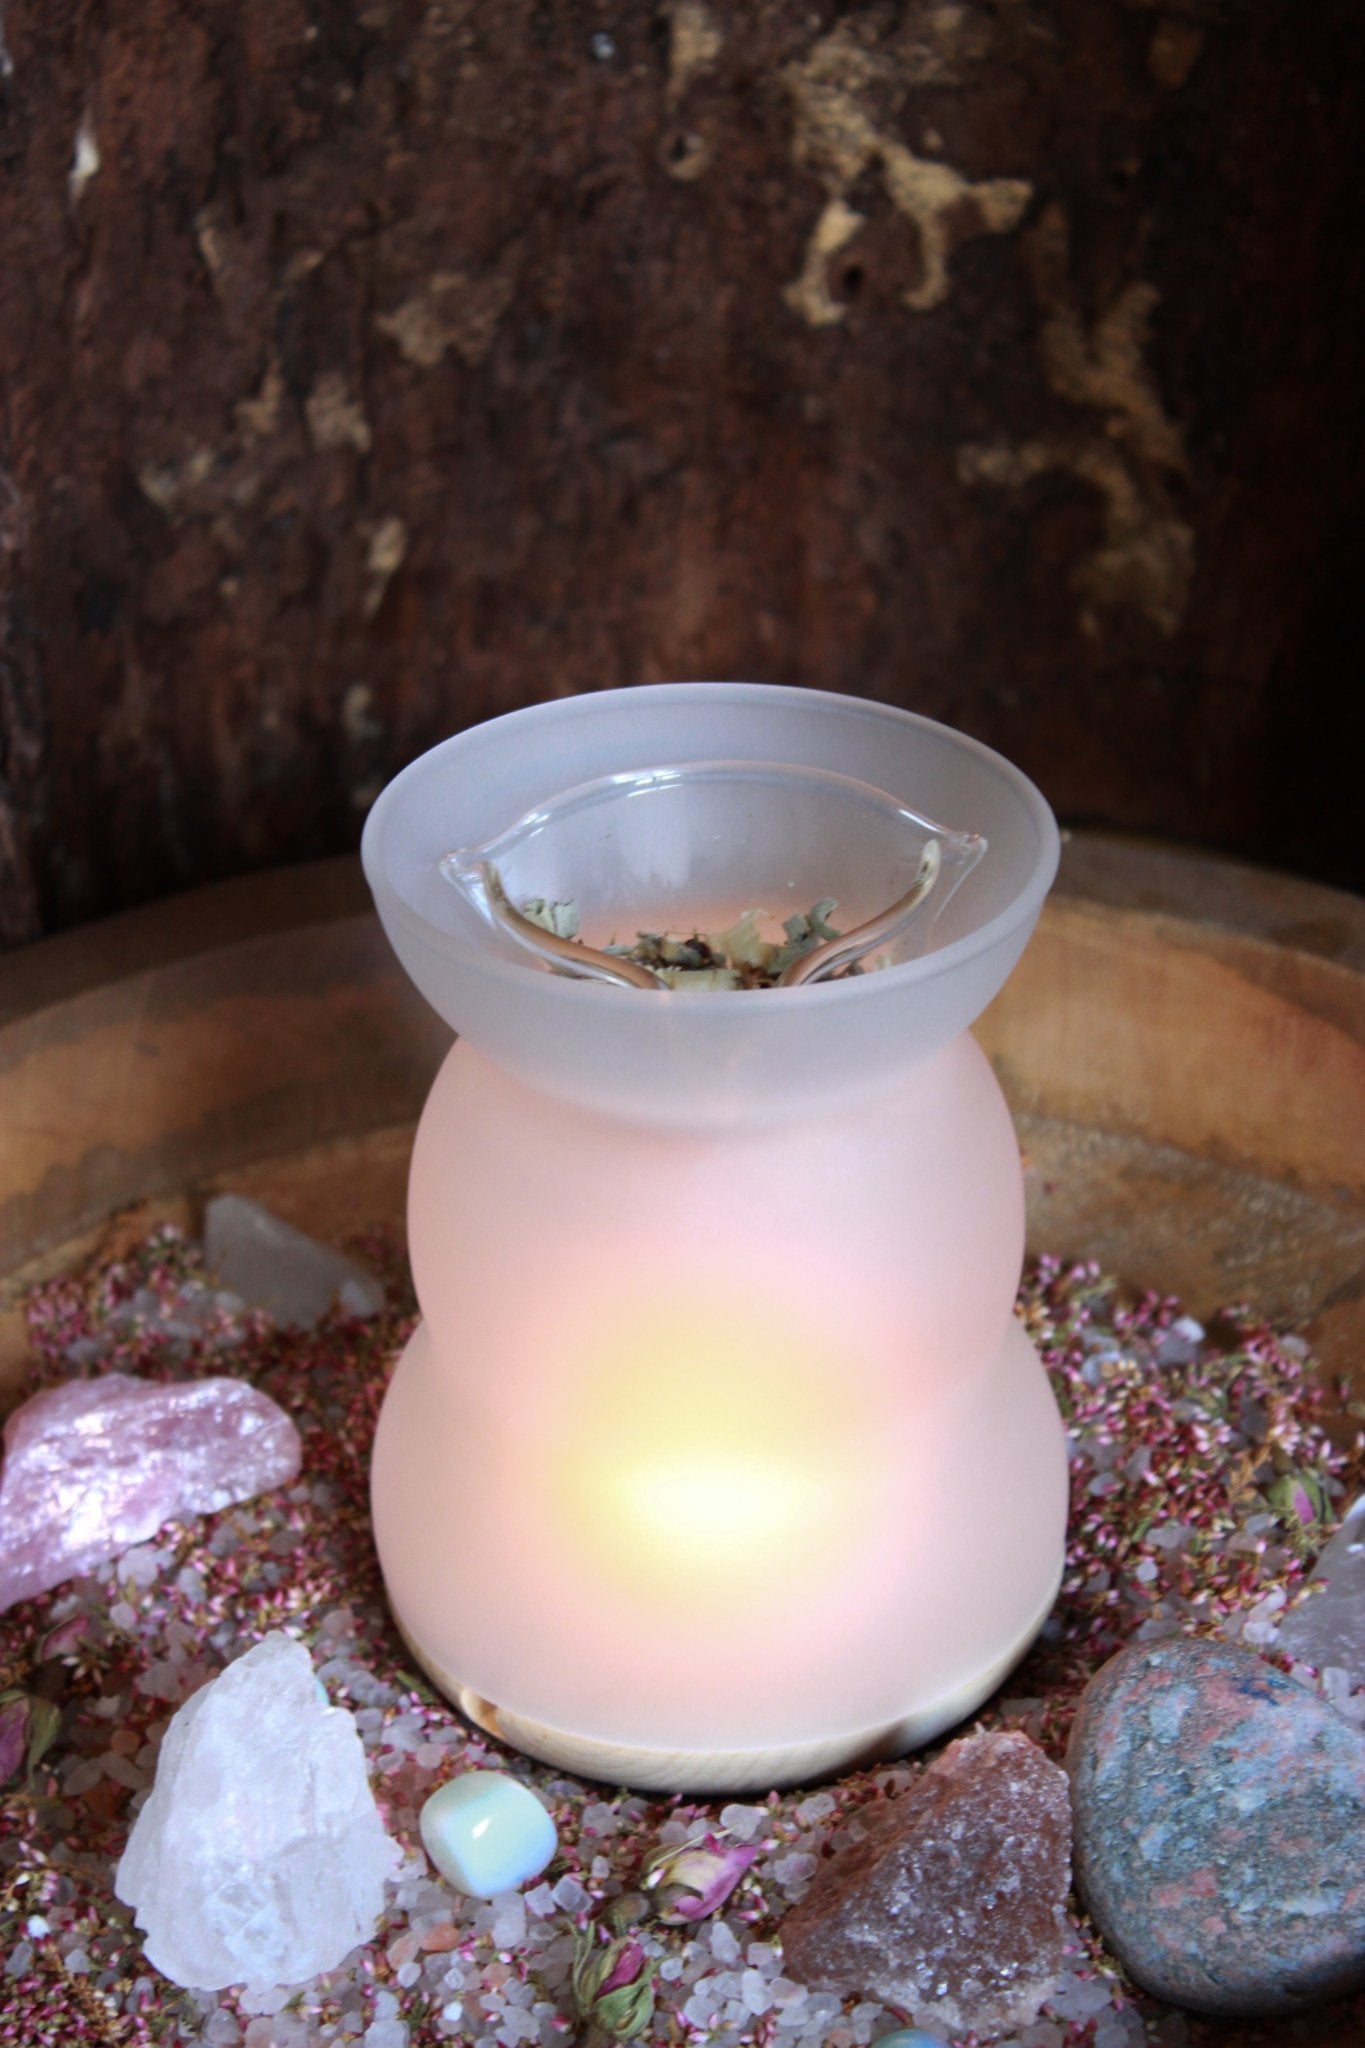 Duftlampe für Räuchermischungen und lose Kräuter - Moderne, weiße Duftlampe mit einer klaren Schale oben, gefüllt mit getrockneten Blättern, präsentiert auf einem Holztisch, umgeben von einer Auswahl an bunten Kristallen und getrockneten Blumen. 